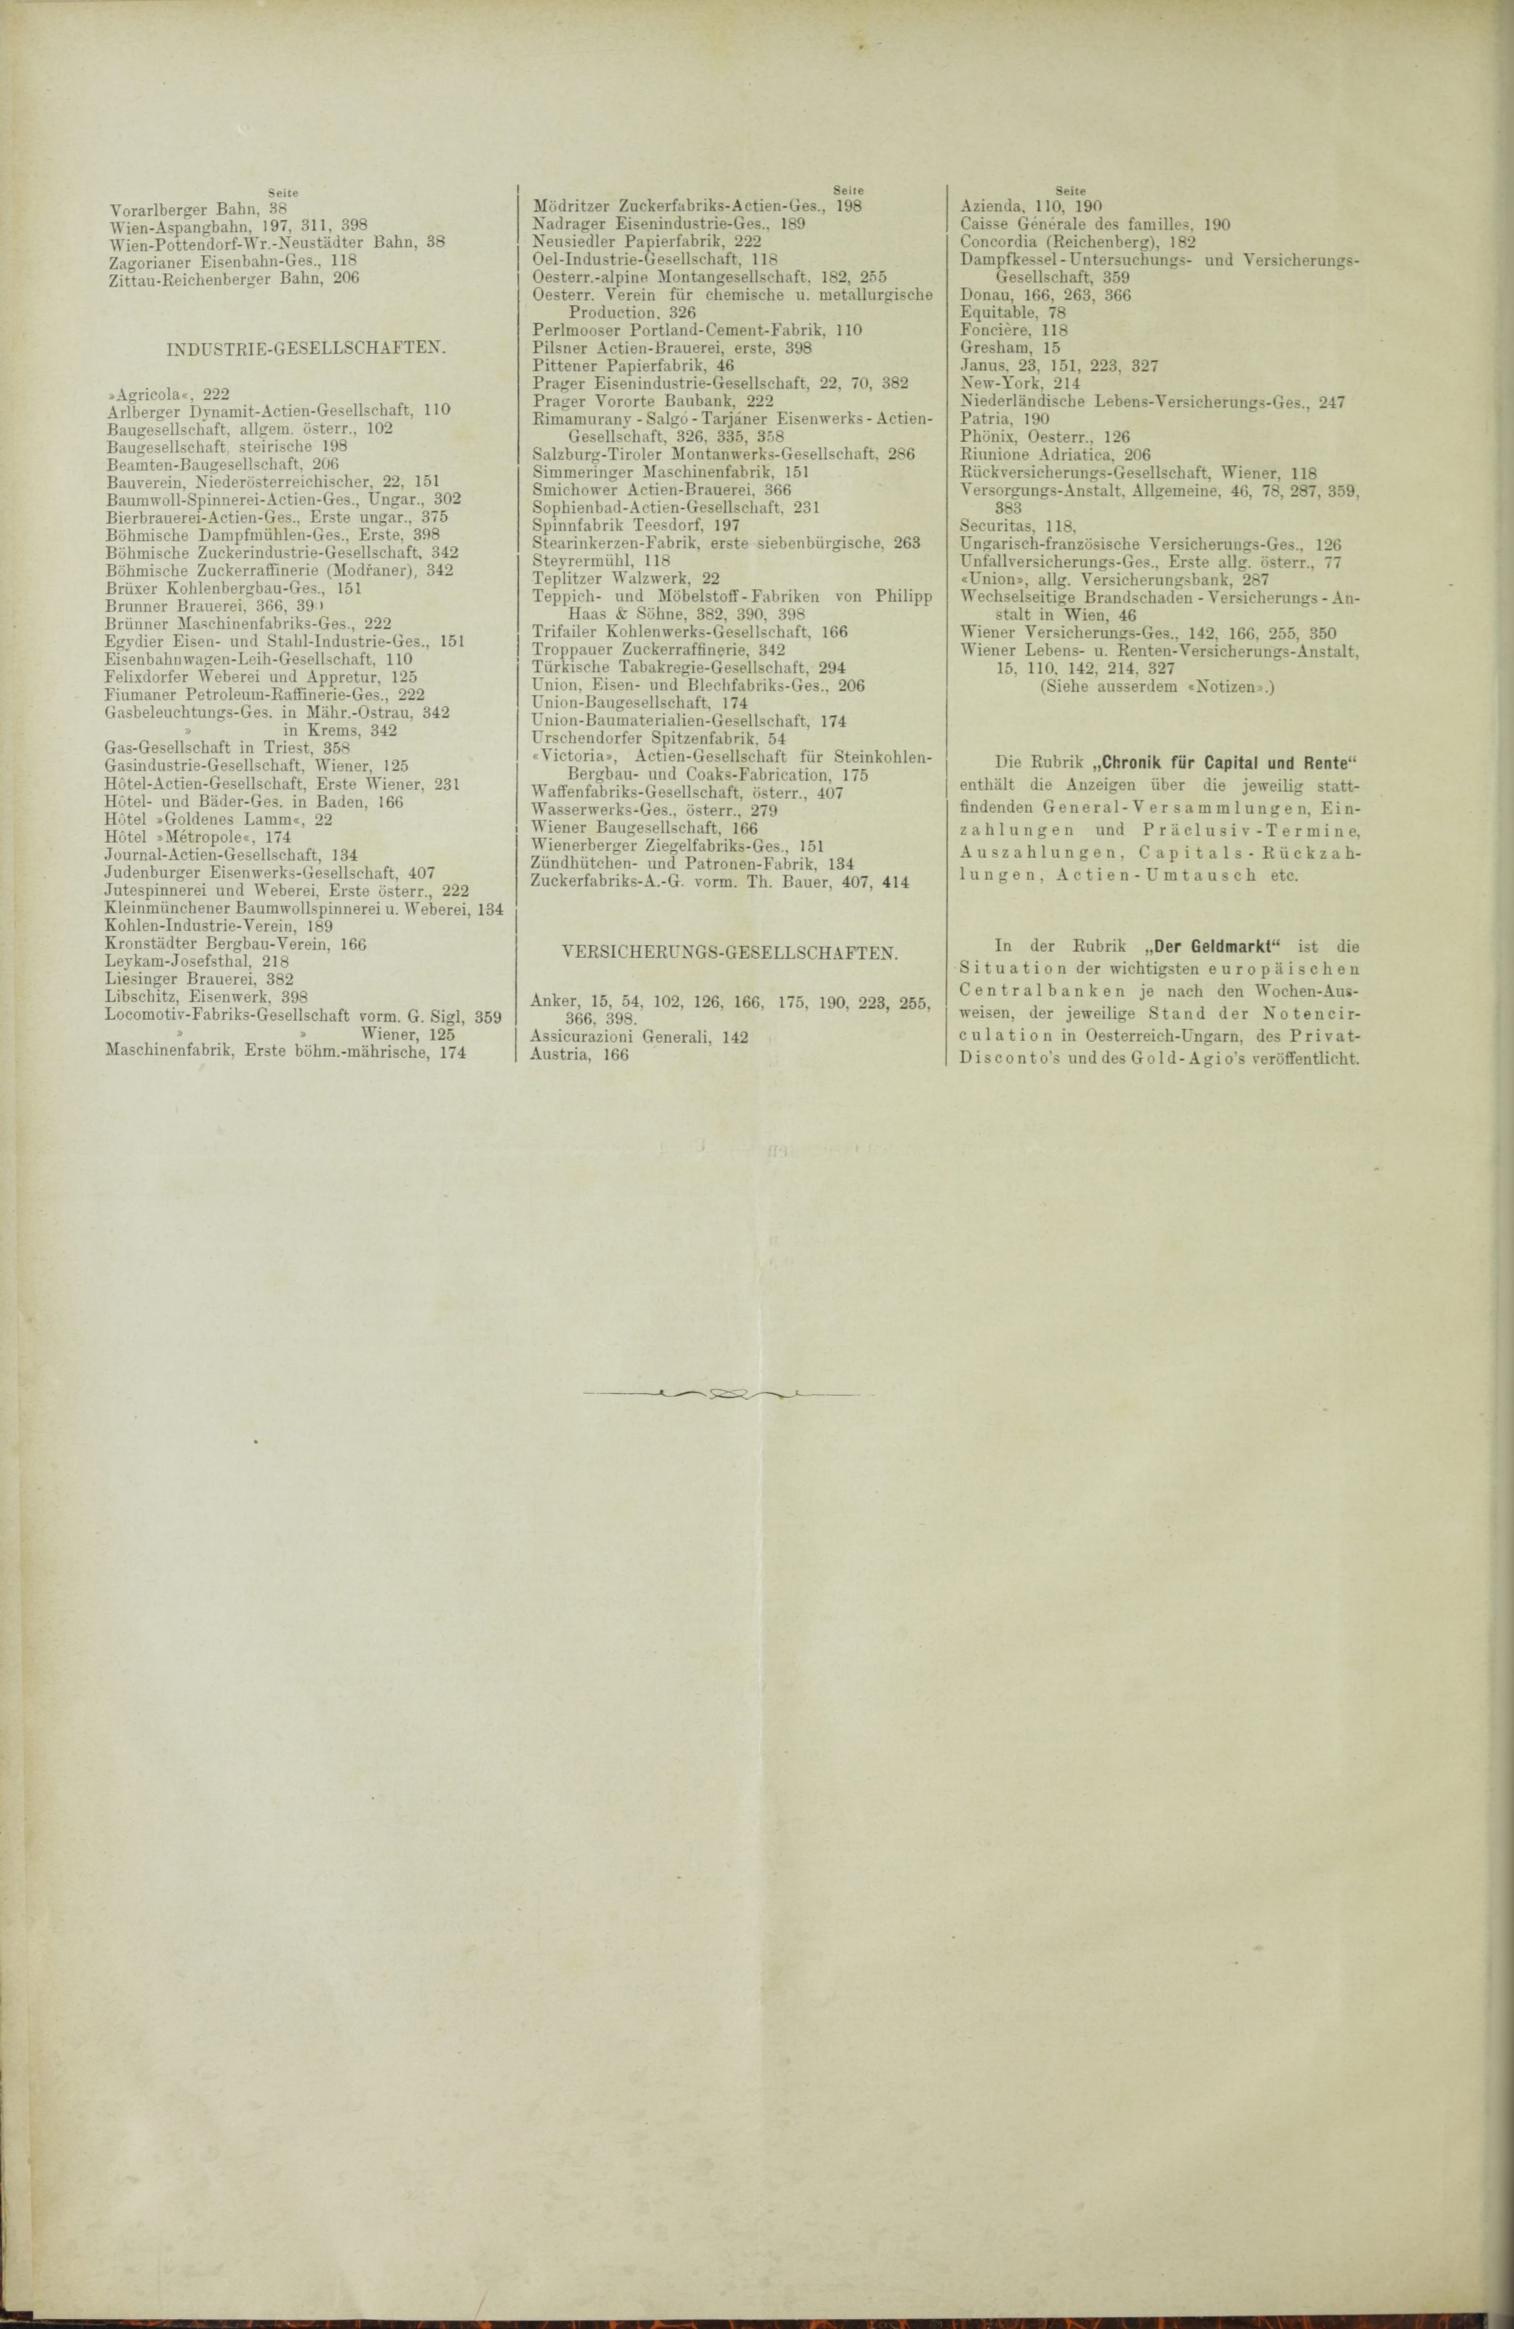 Der Tresor 24.06.1886 - Seite 12